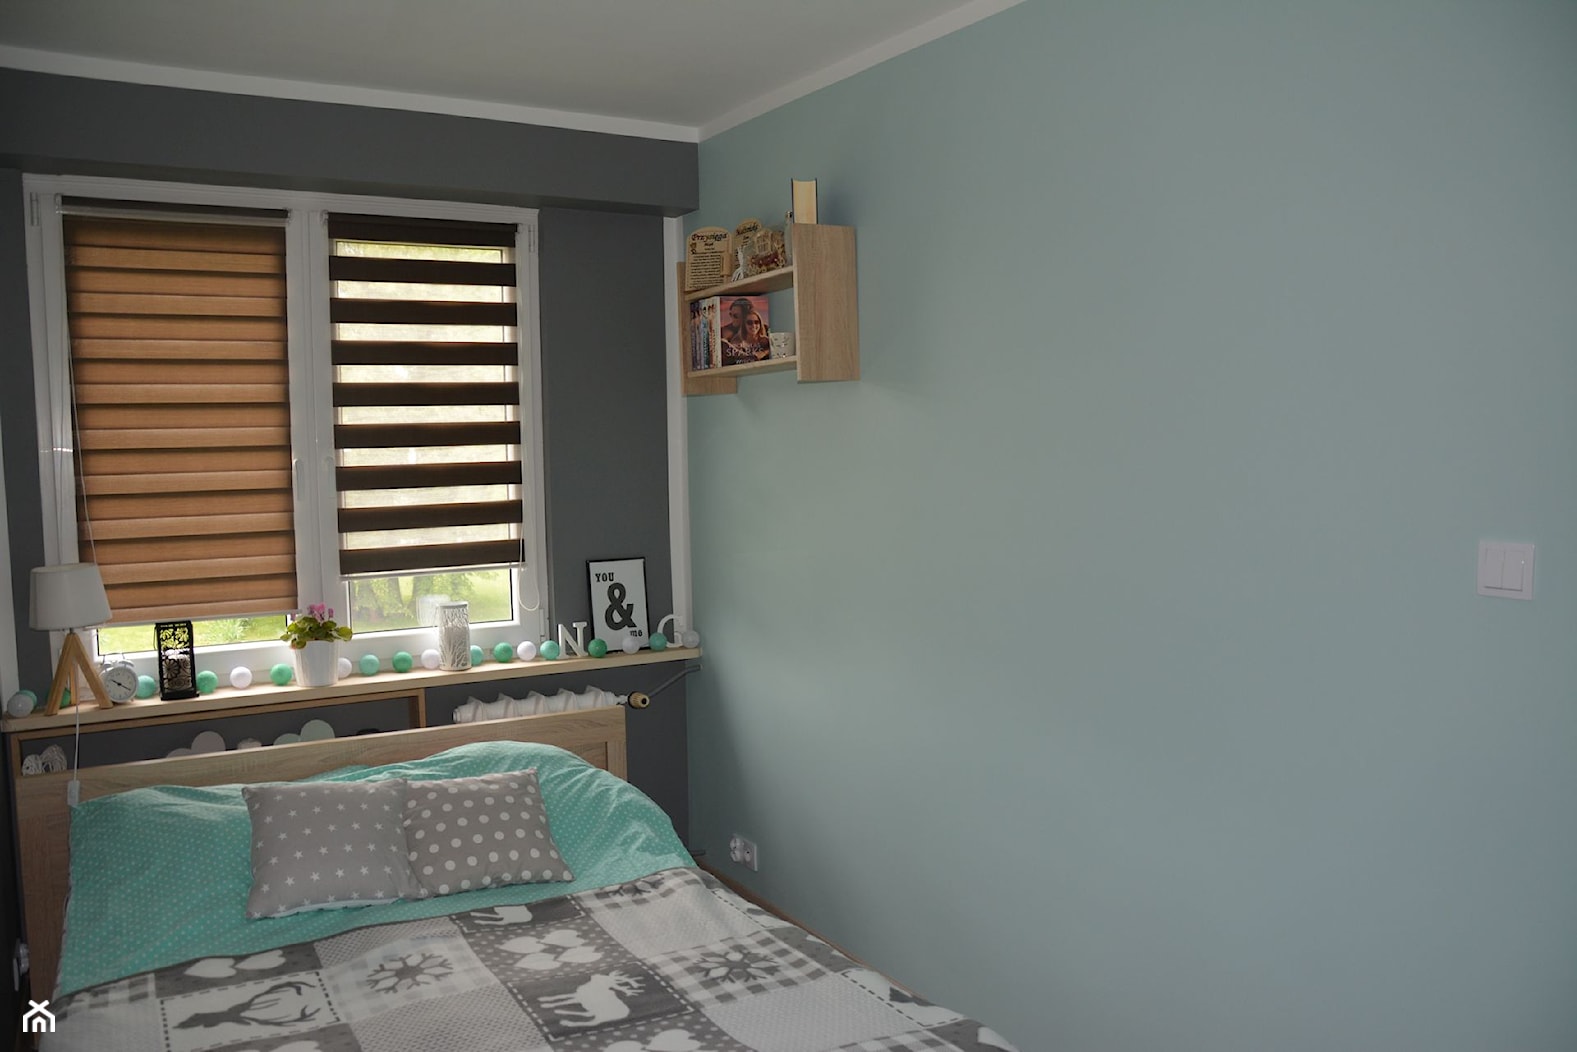 Mieszkanie w wielkiej płycie - spełnione marzenie - Sypialnia - zdjęcie od Natalia Greń 2 - Homebook